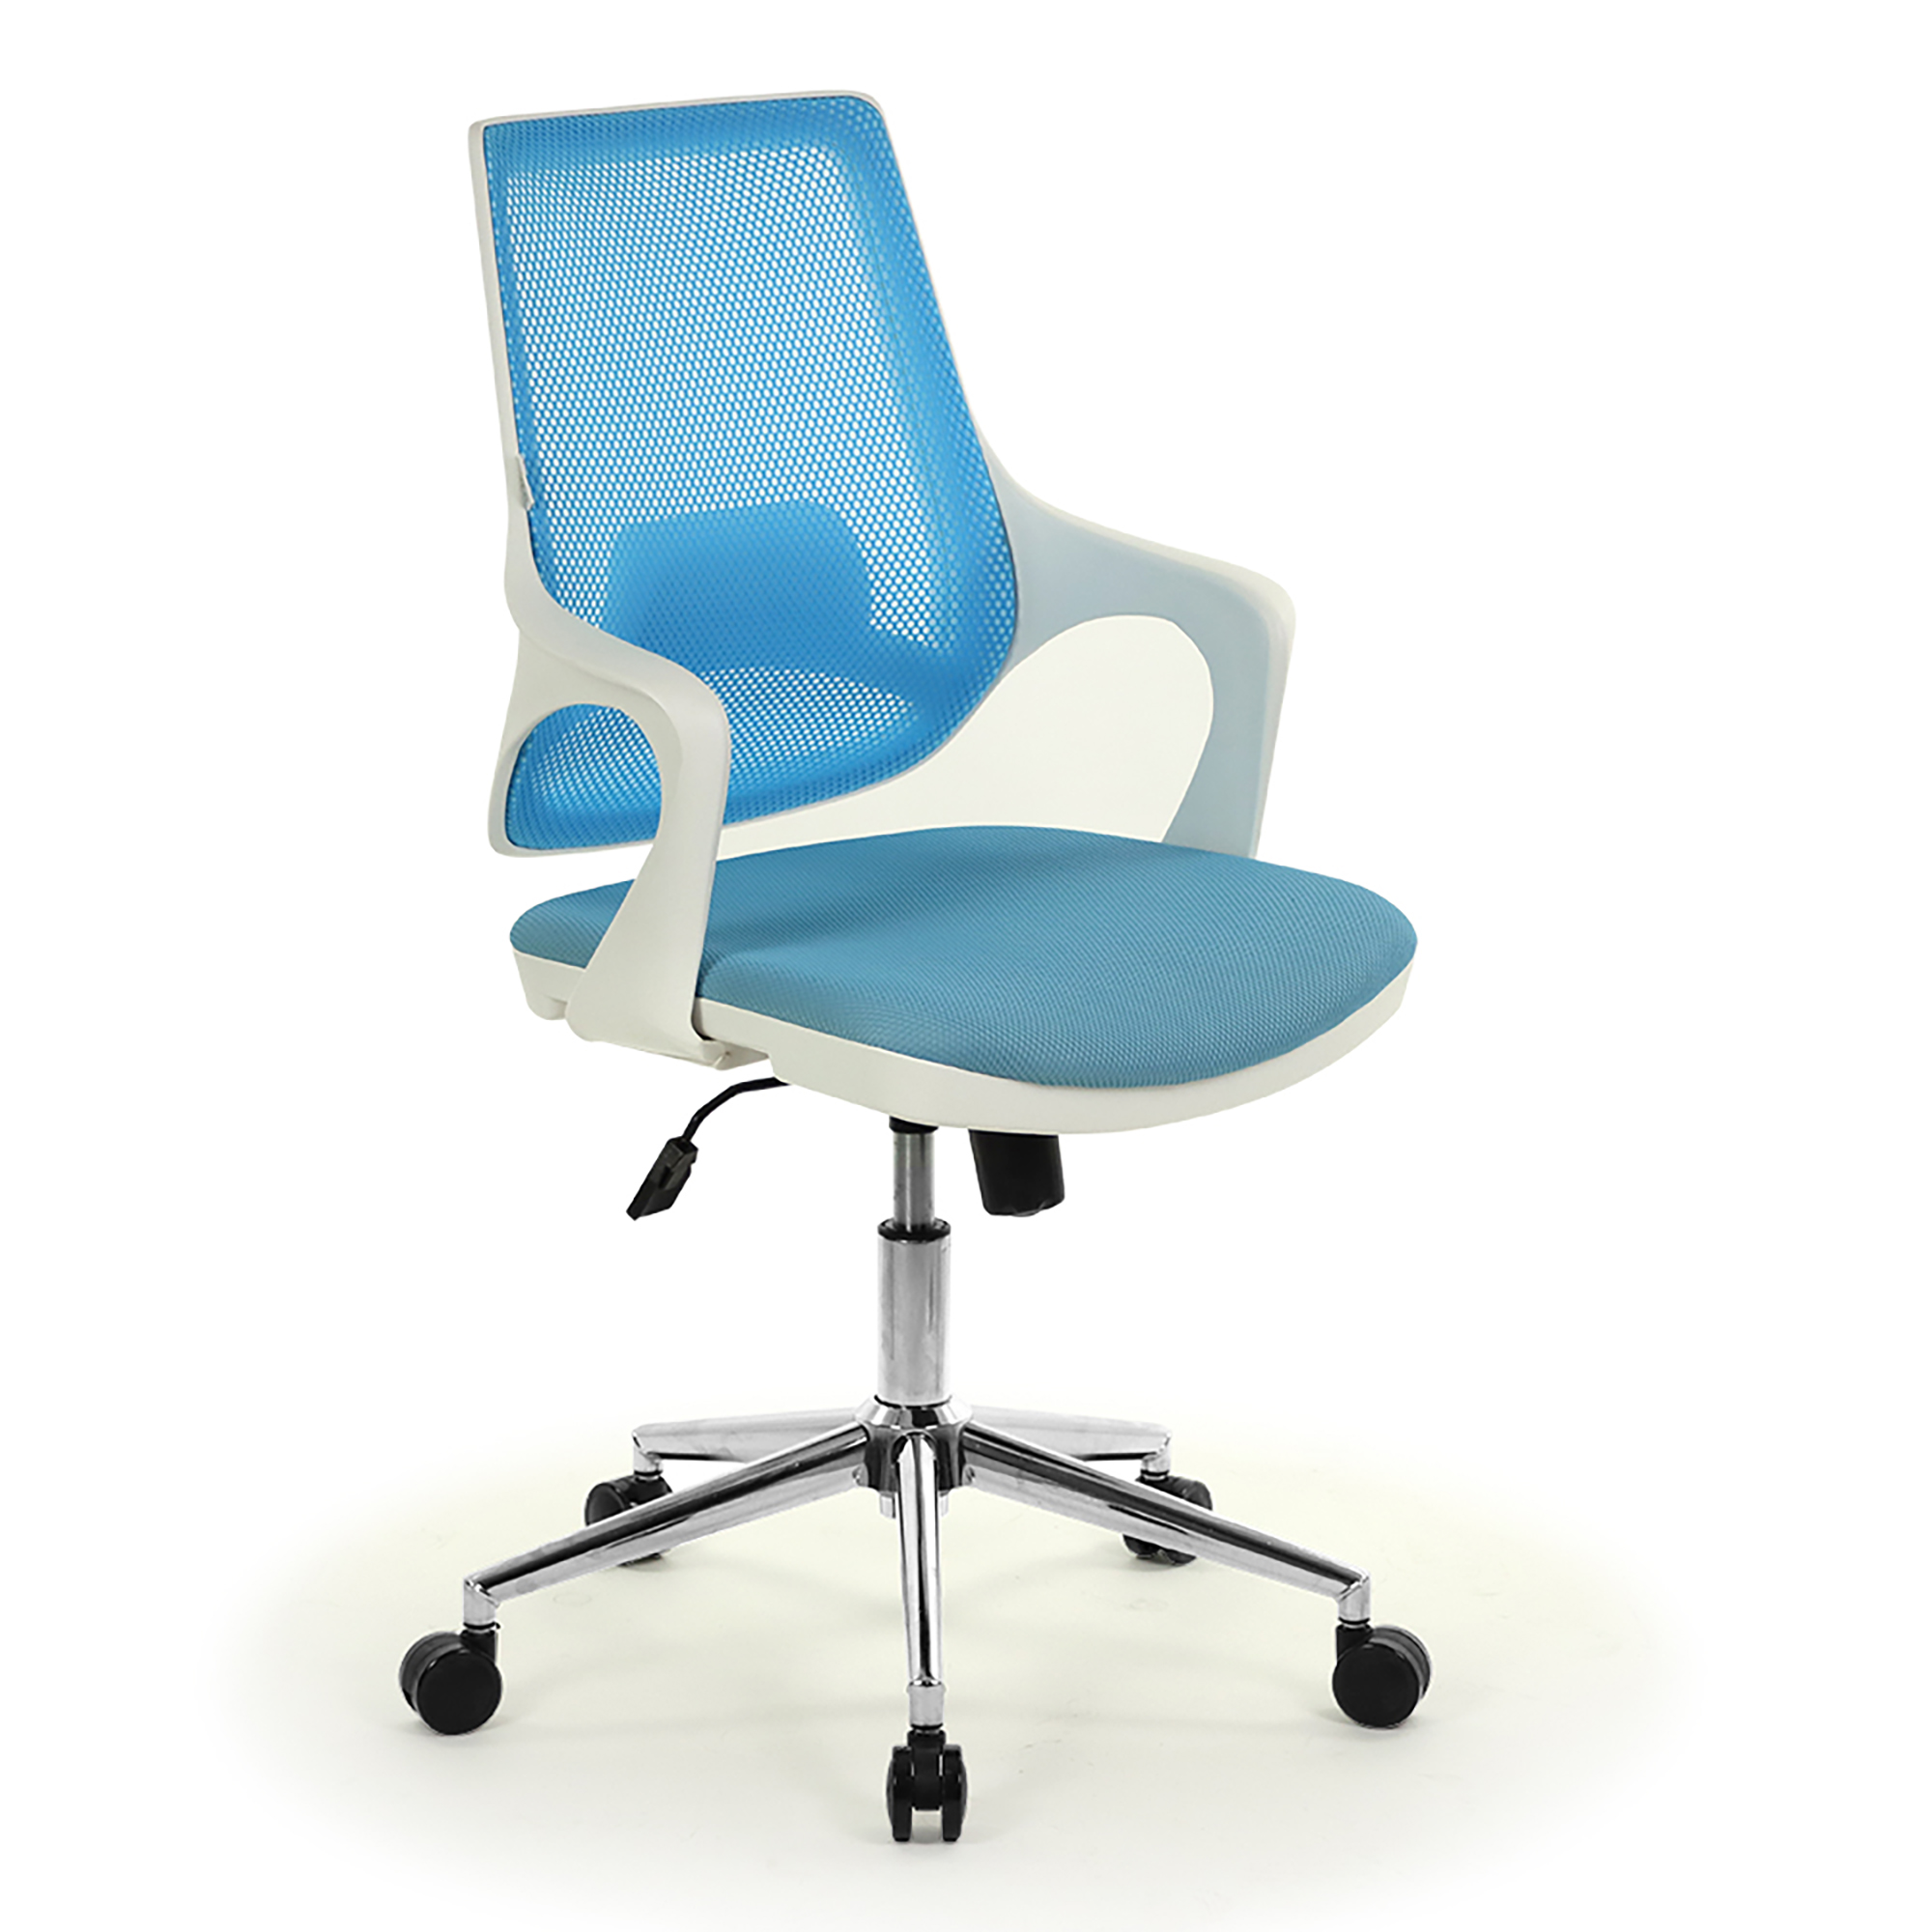 Çalışma Sandalyesi Modelleri ve Fiyatları | Ofis Koltukları